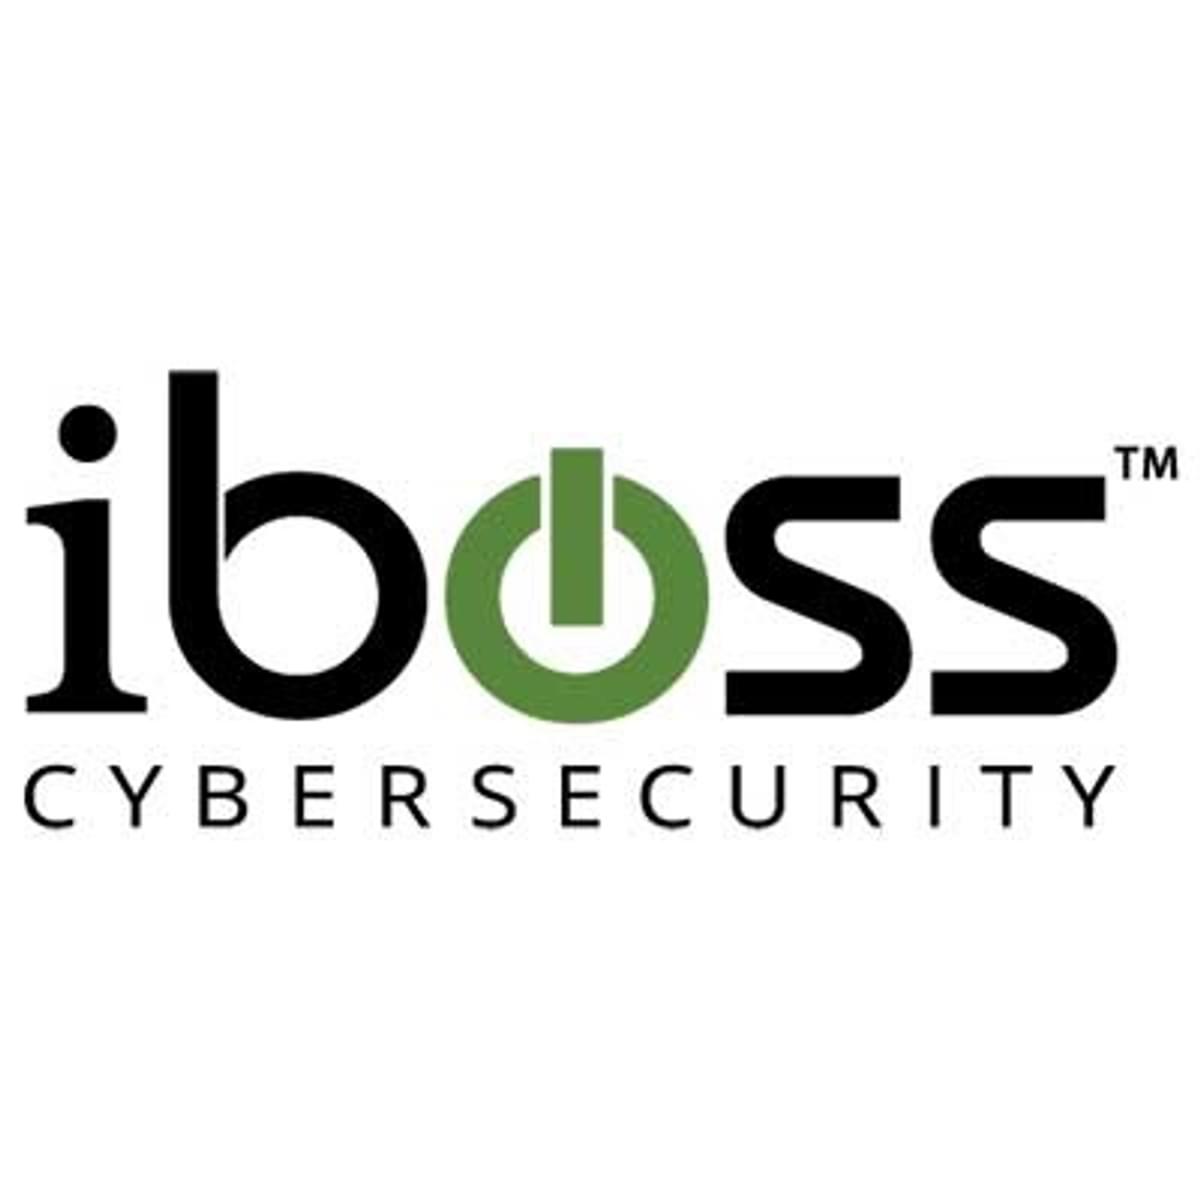 SASE cloud security specialist iboss krijgt flinke kapitaalinjectie image